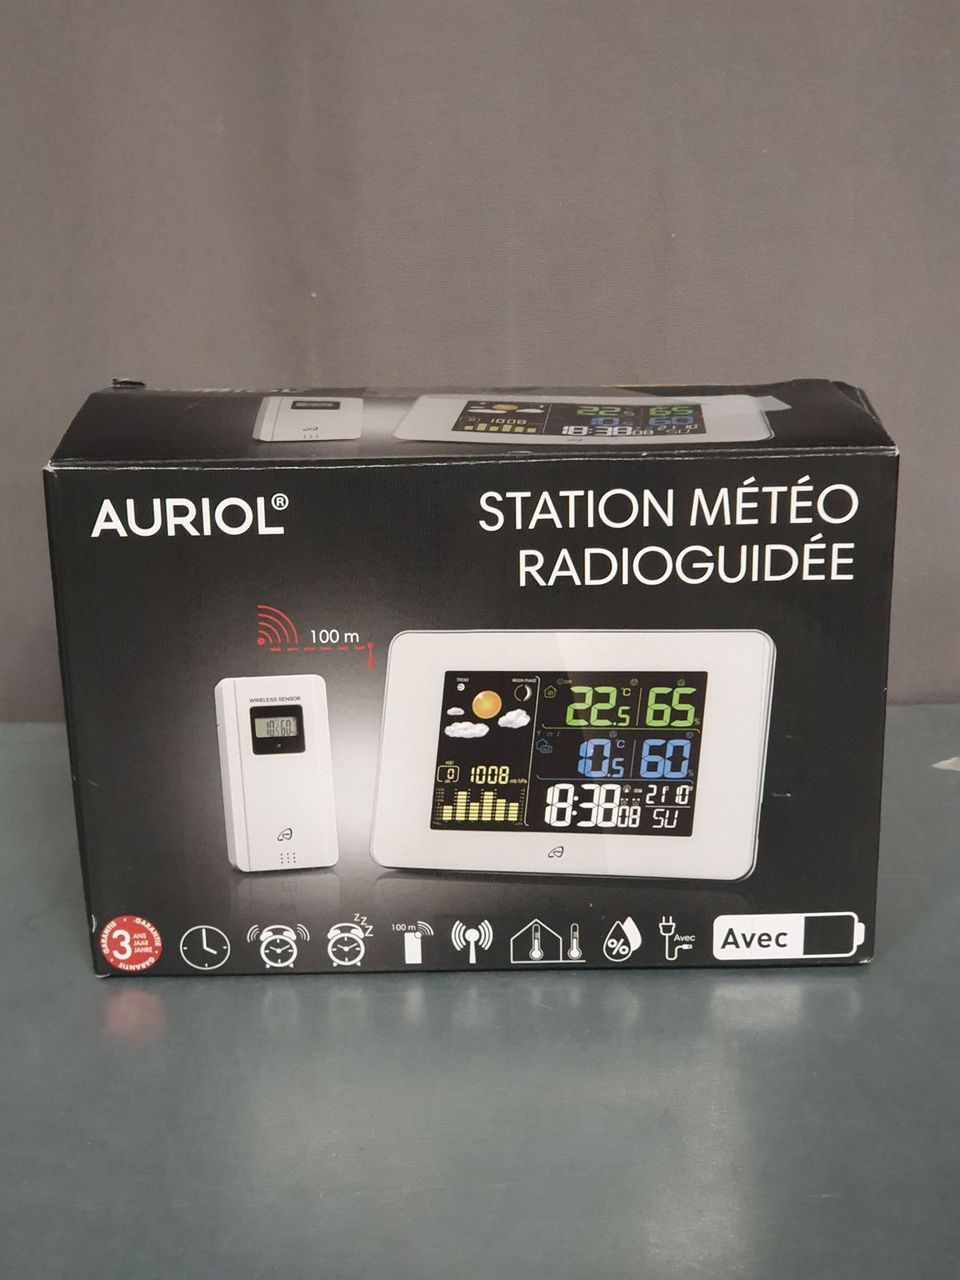 Station météo radioguidée Auriol blanc article vendu non…